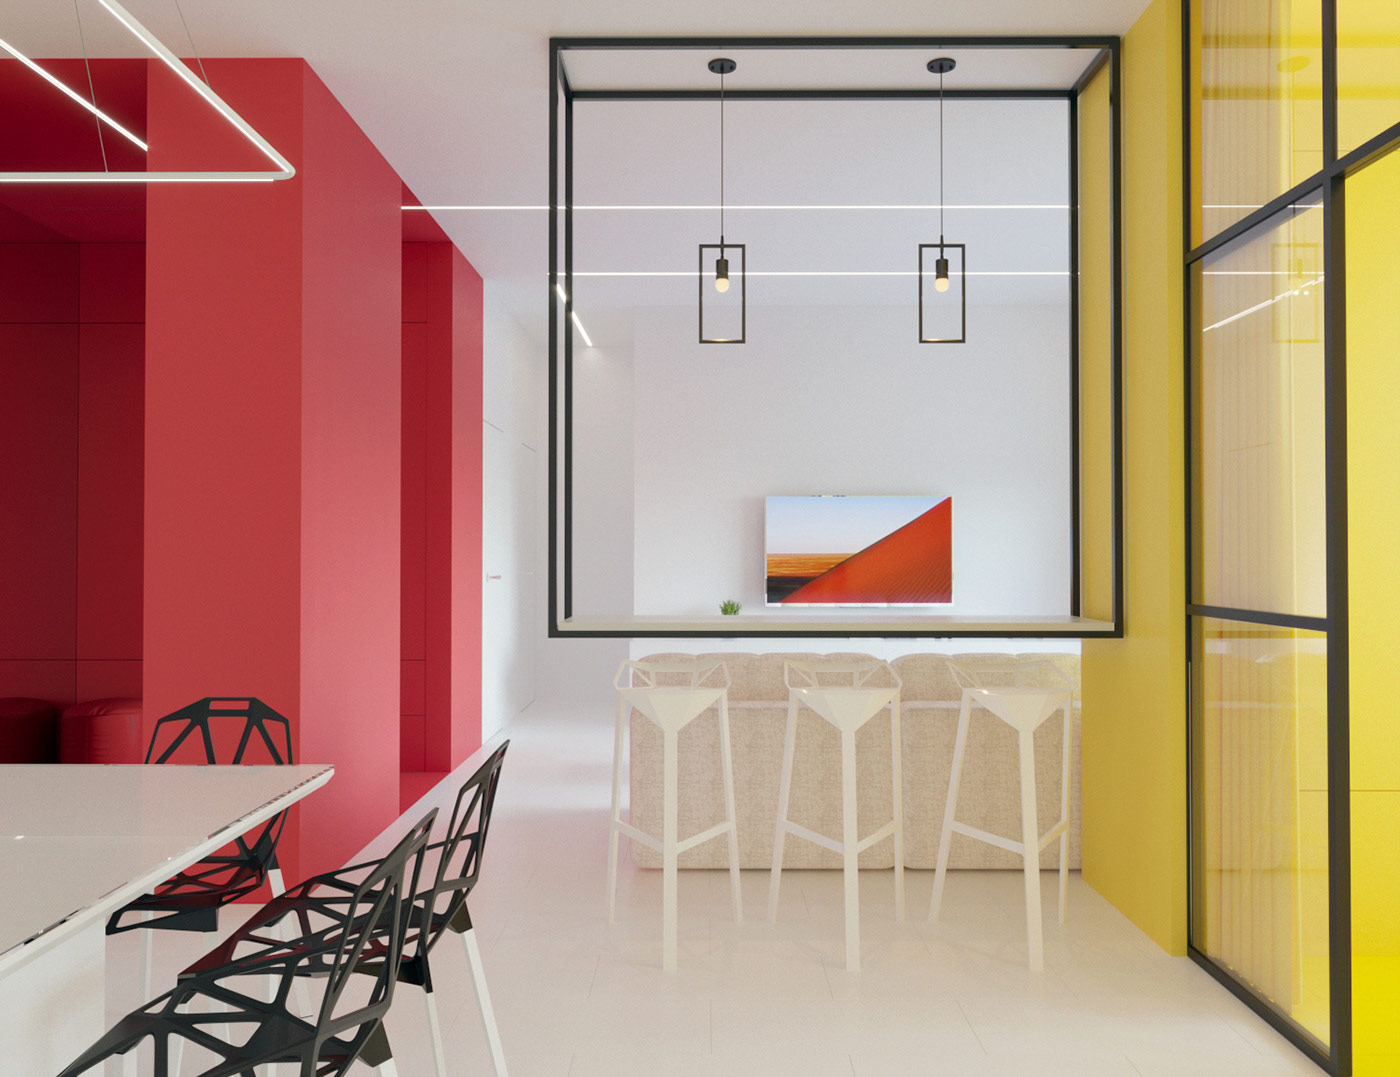 纯色和几何形状：荷兰风格派(De Stijl)家居装修艺术